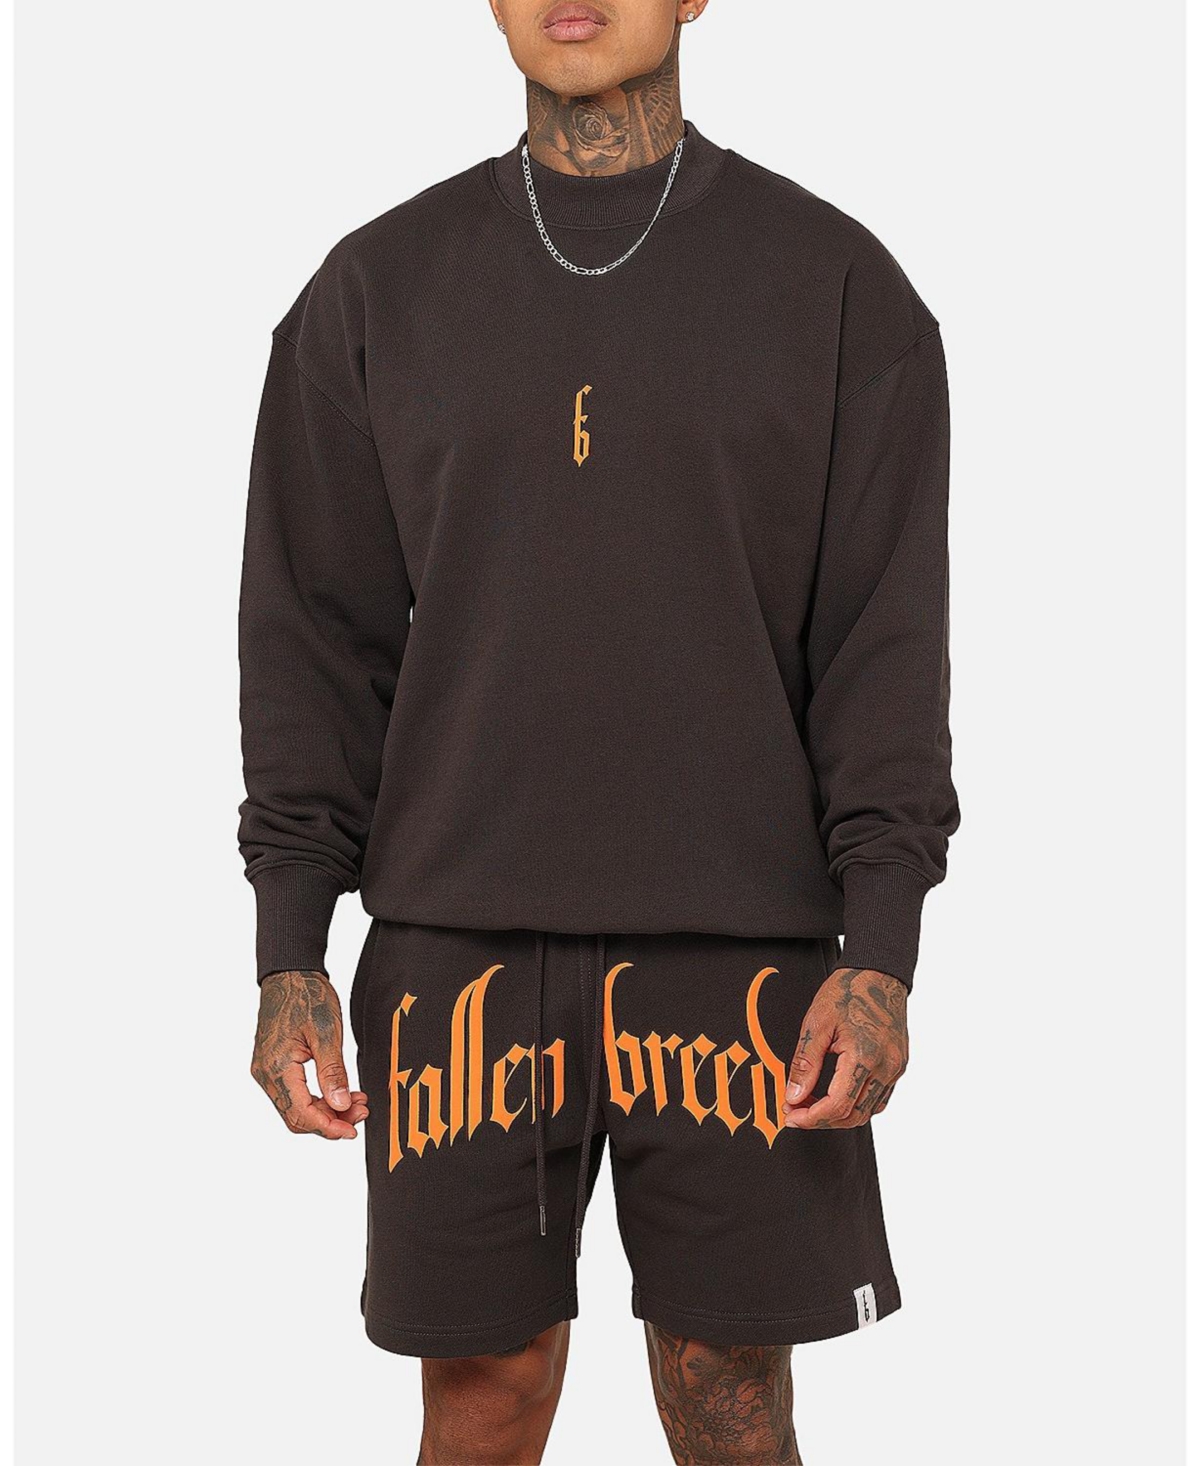 Men's Monogram Crewneck Sweatshirt - Dark charcoal/orange